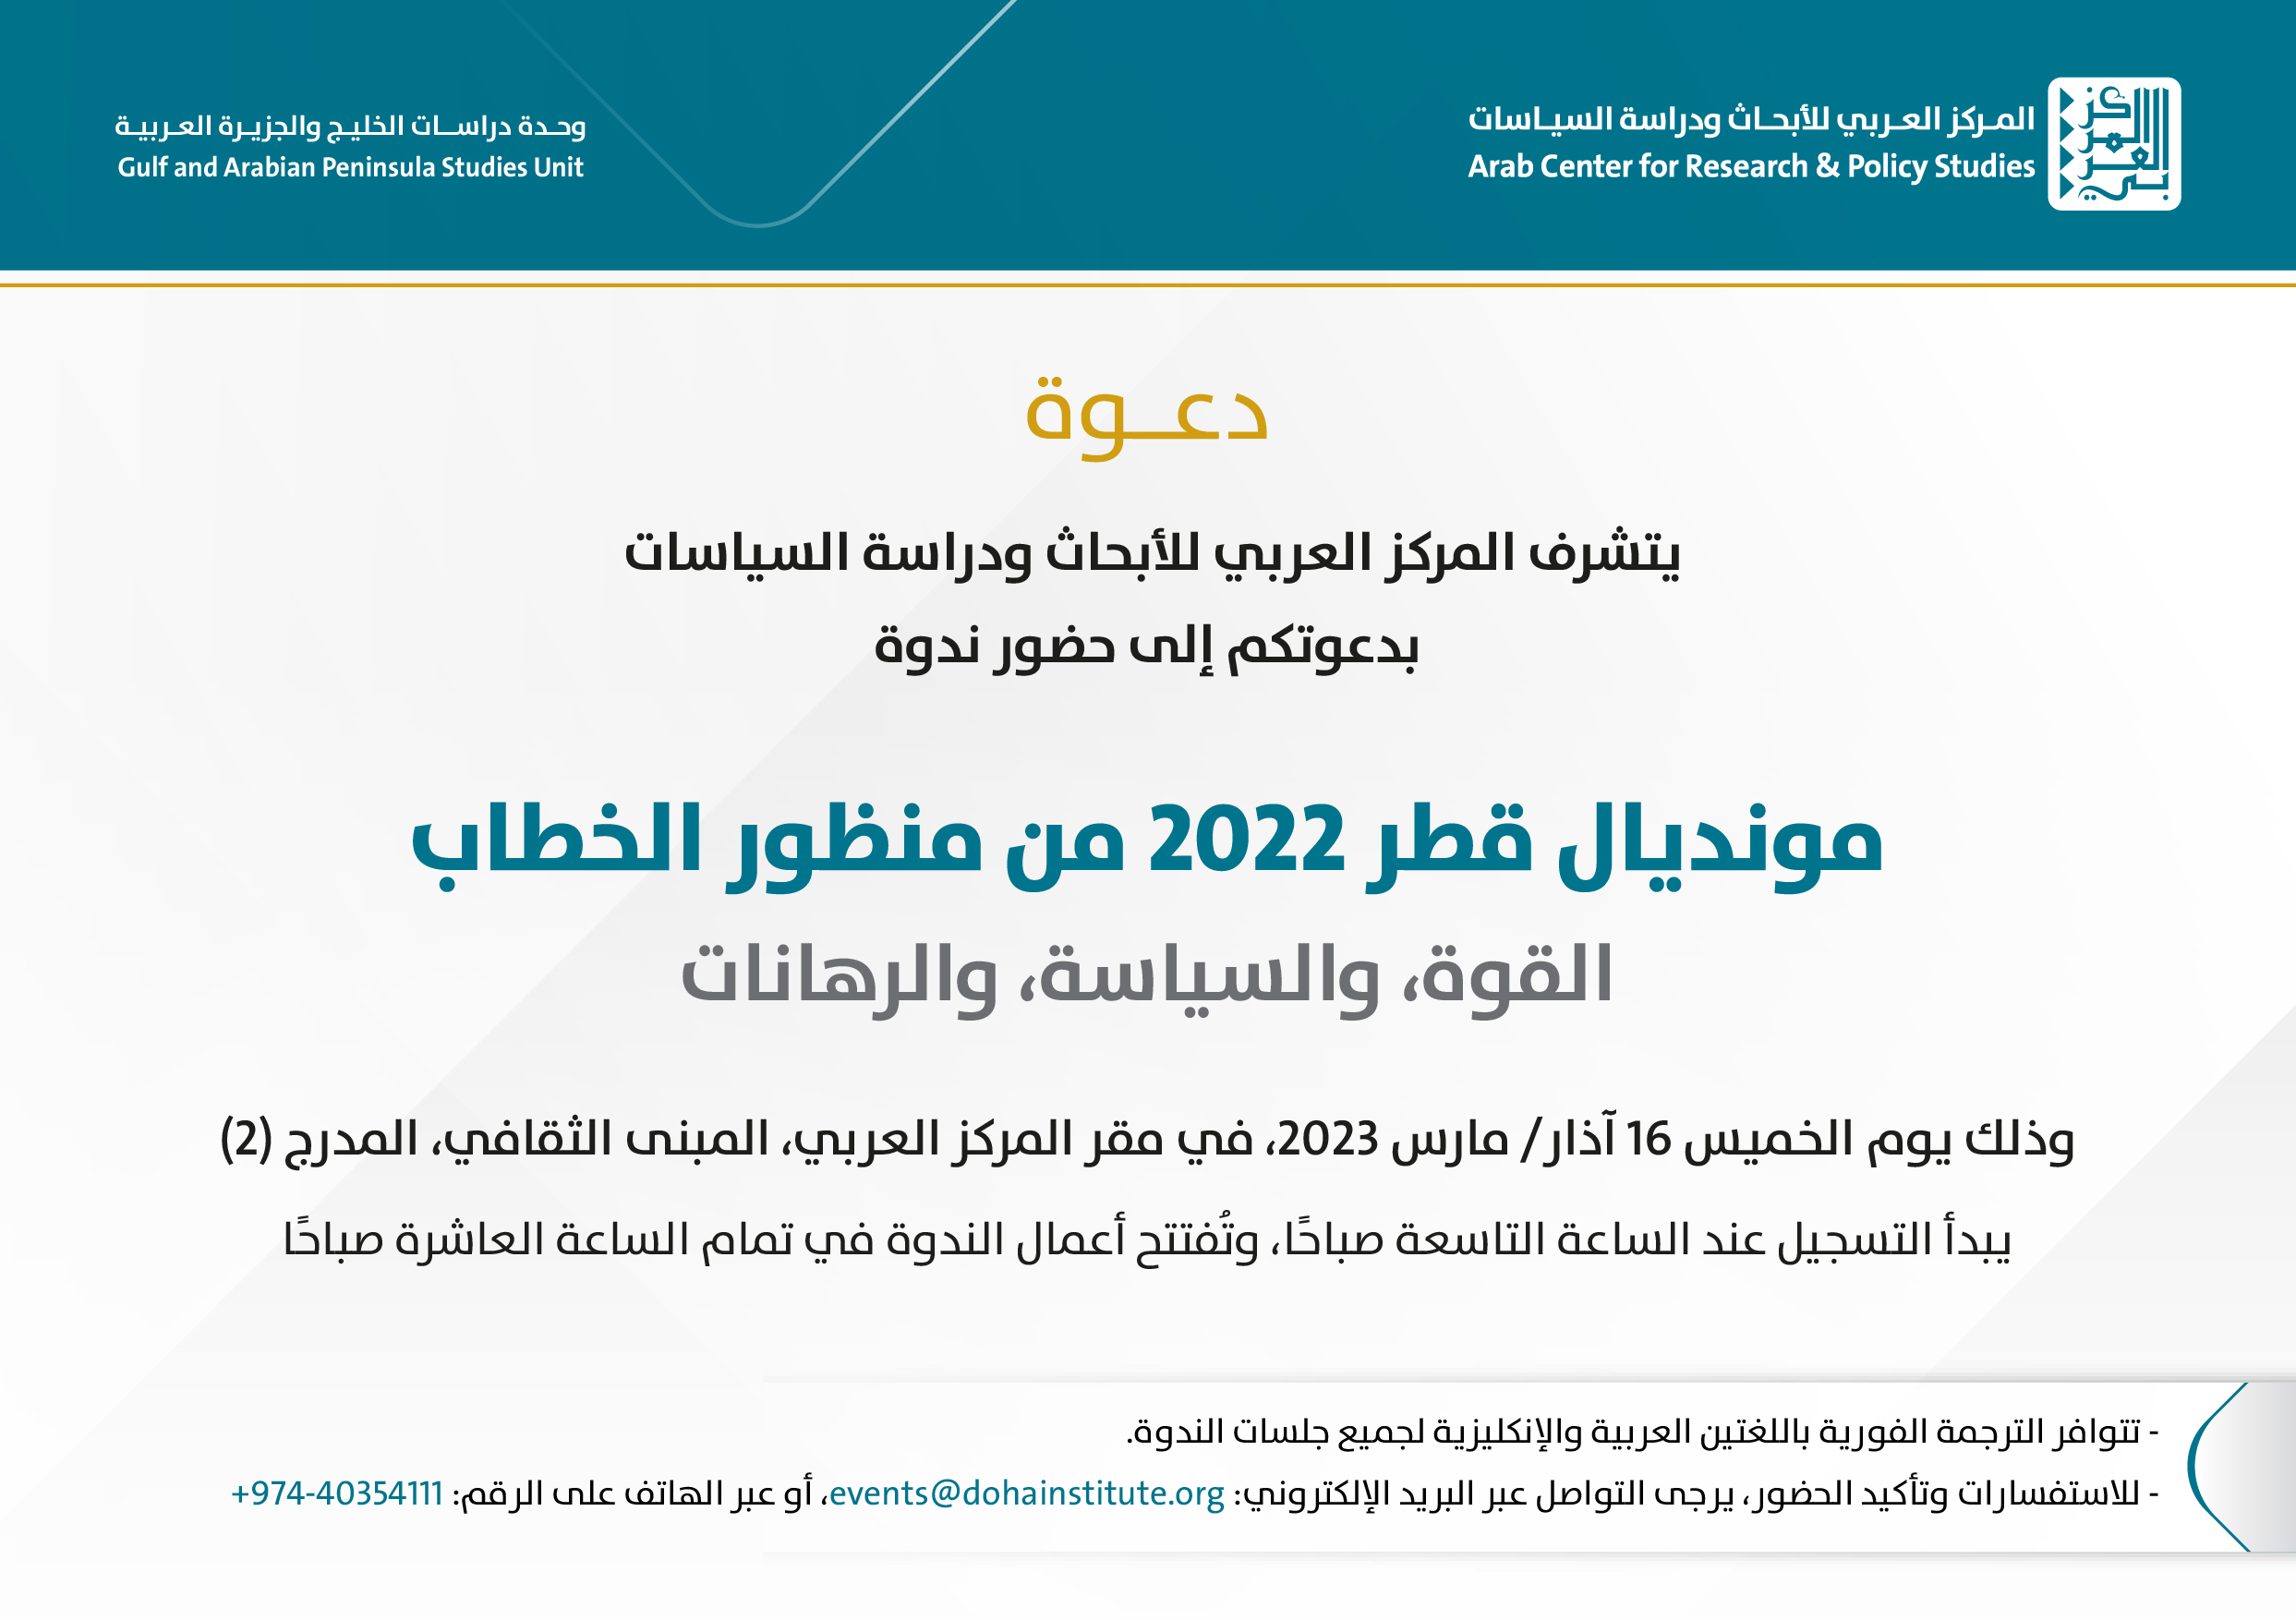 وحدة دراسات الخليج والجزيرة العربية بالمركز العربي تنظّم ندوة عن "مونديال قطر 2022 من منظور الخطاب"